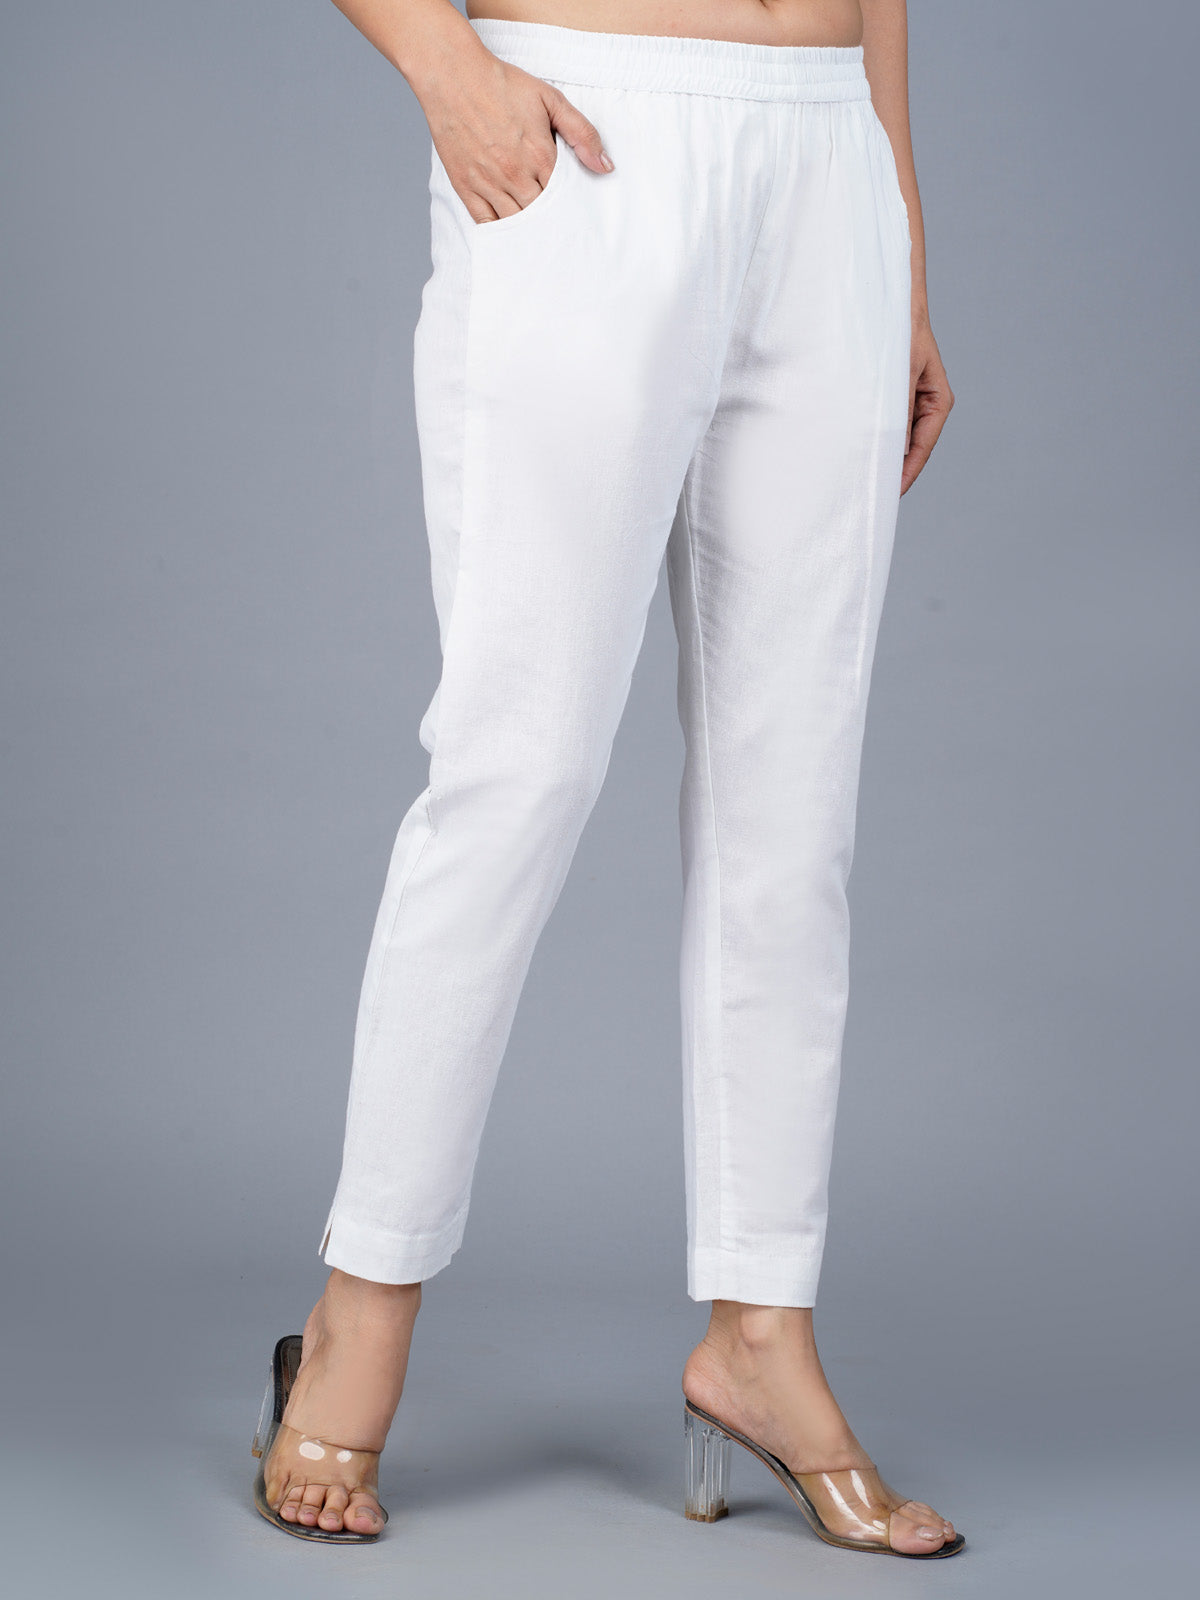 Women's White Regular Fit Elastic Cotton Trouser